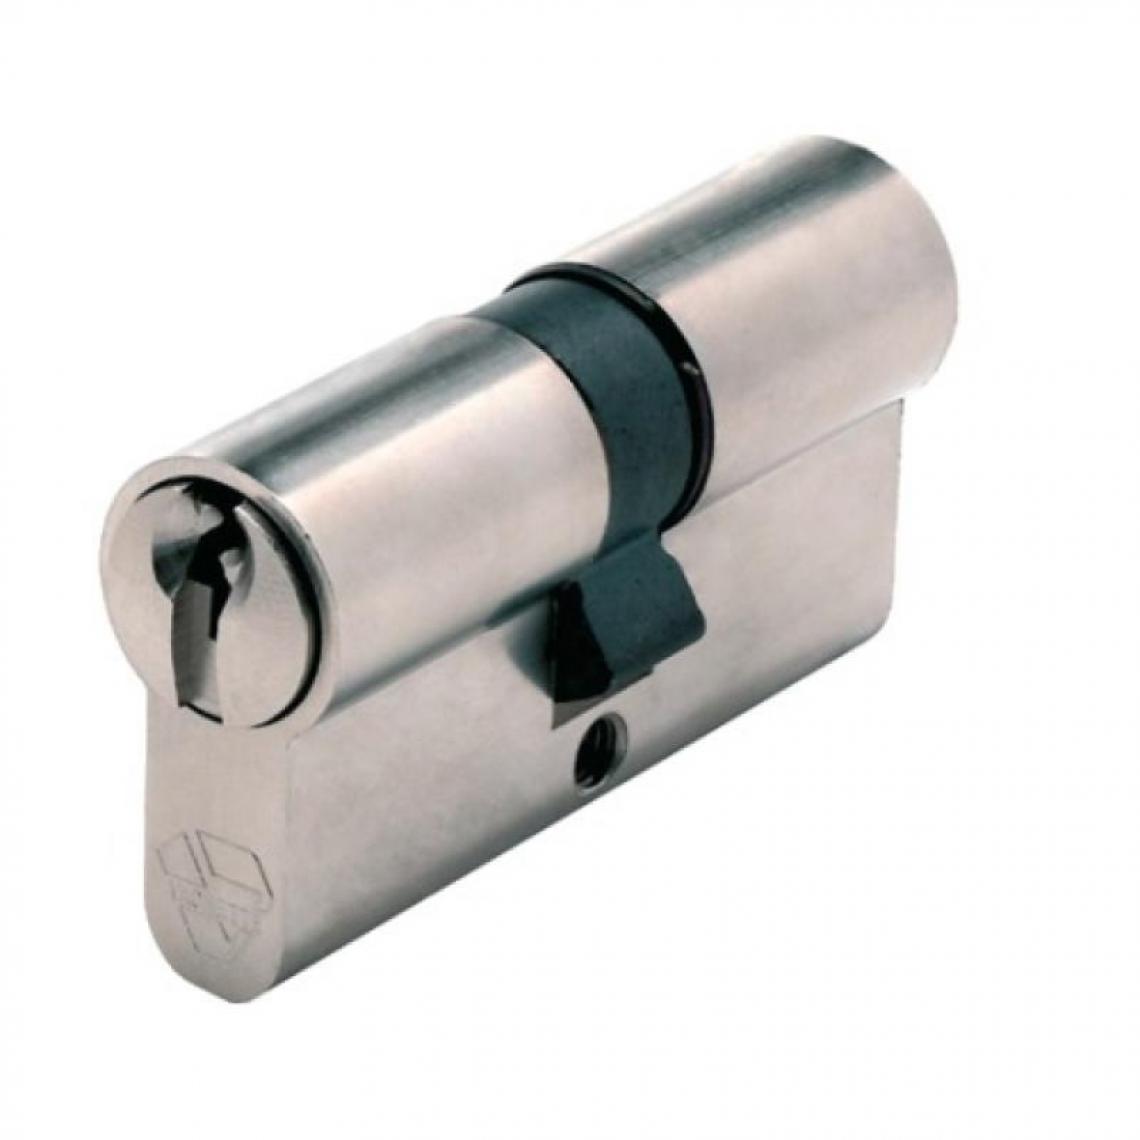 Vachette - Cylindre double breveté type Néo à clé protégée fonction clé de secours varié 3 clés 30 x 30 - Serrure